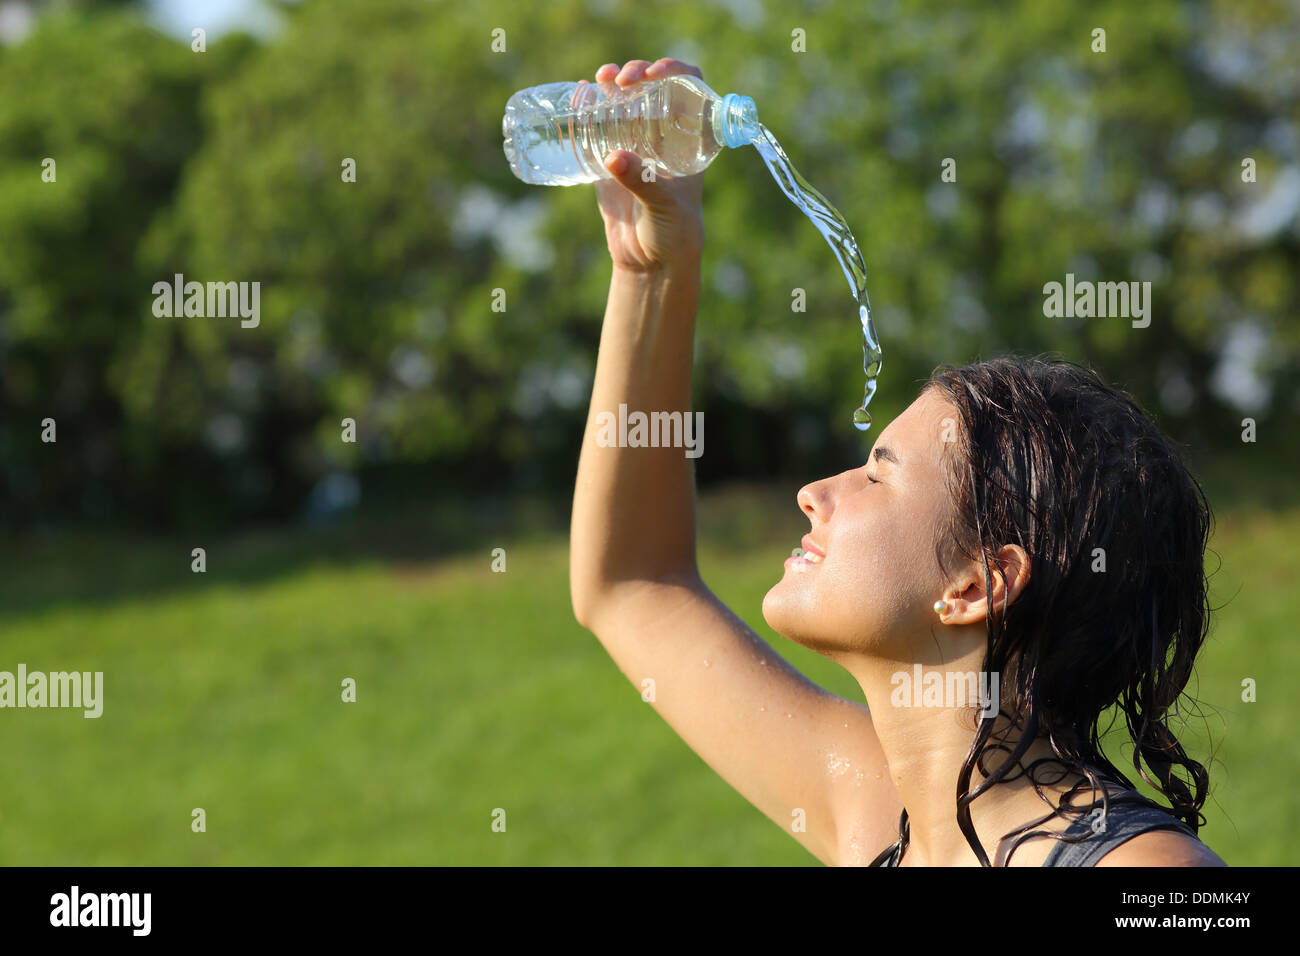 Belle femme se jetant de l'eau d'une bouteille avec un fond vert Banque D'Images